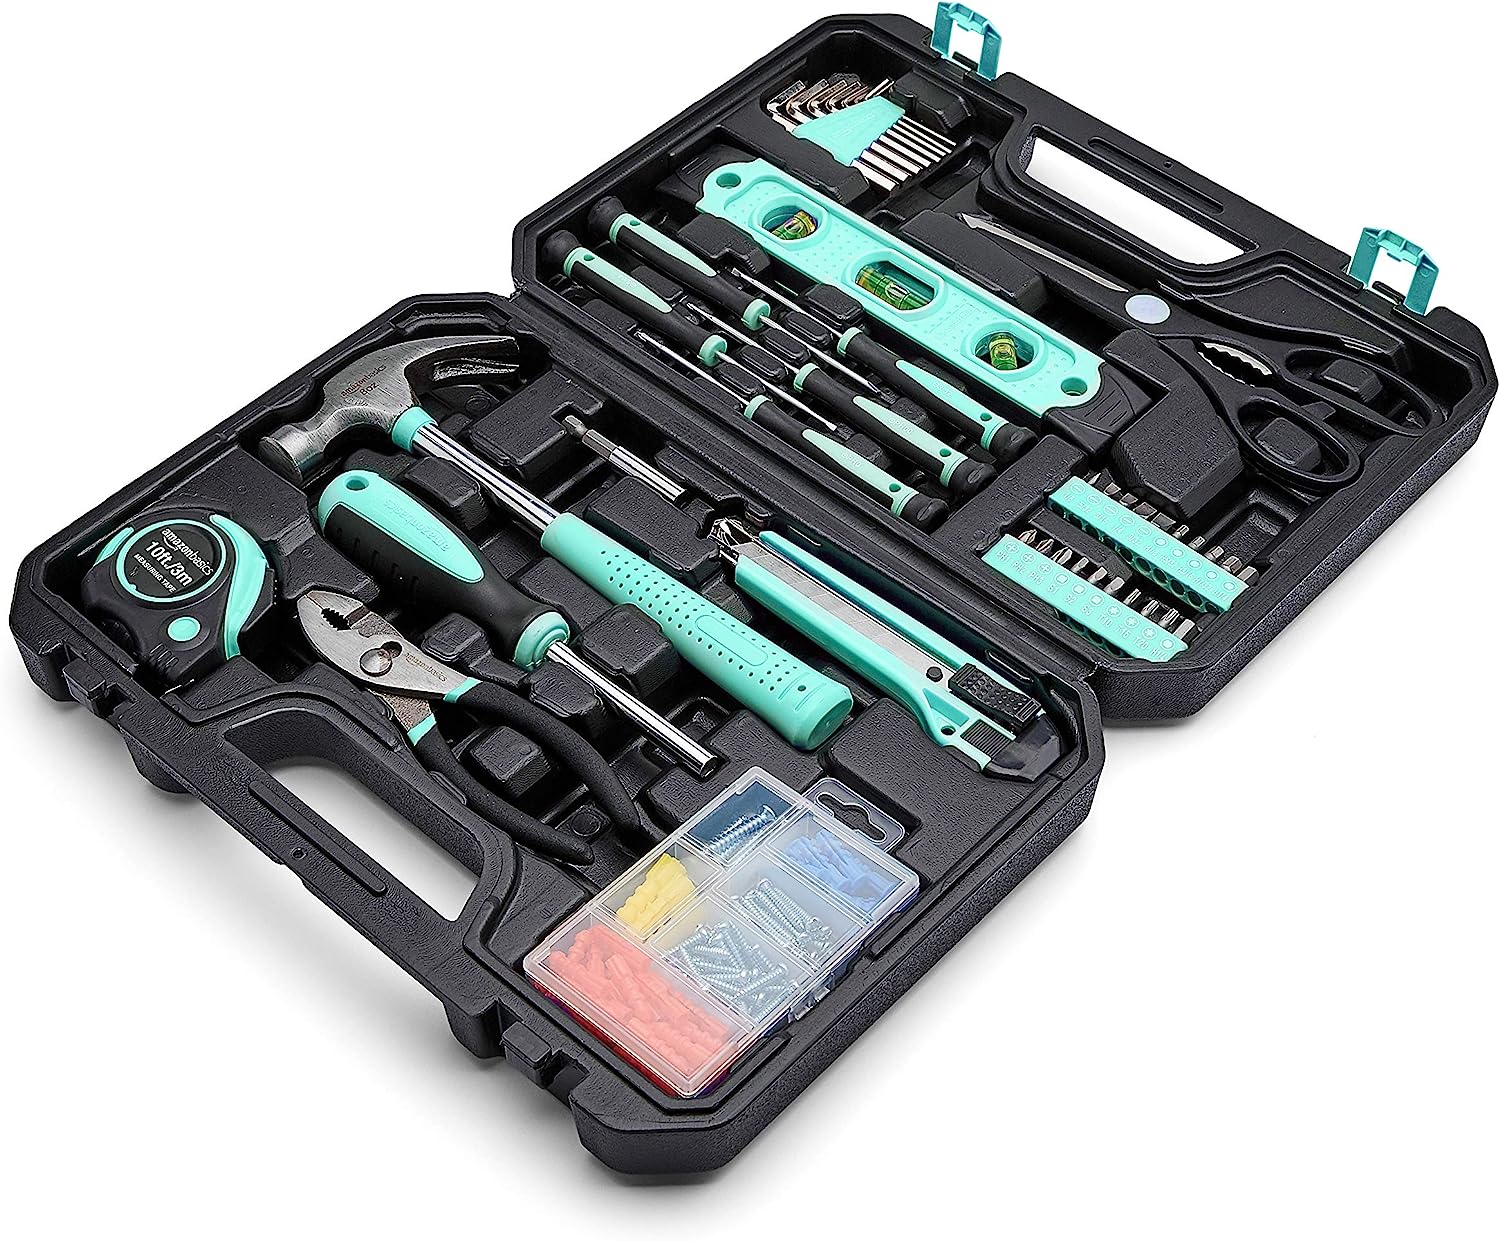 Amazon Basics Household Tool Kit With Storage Case, [...]